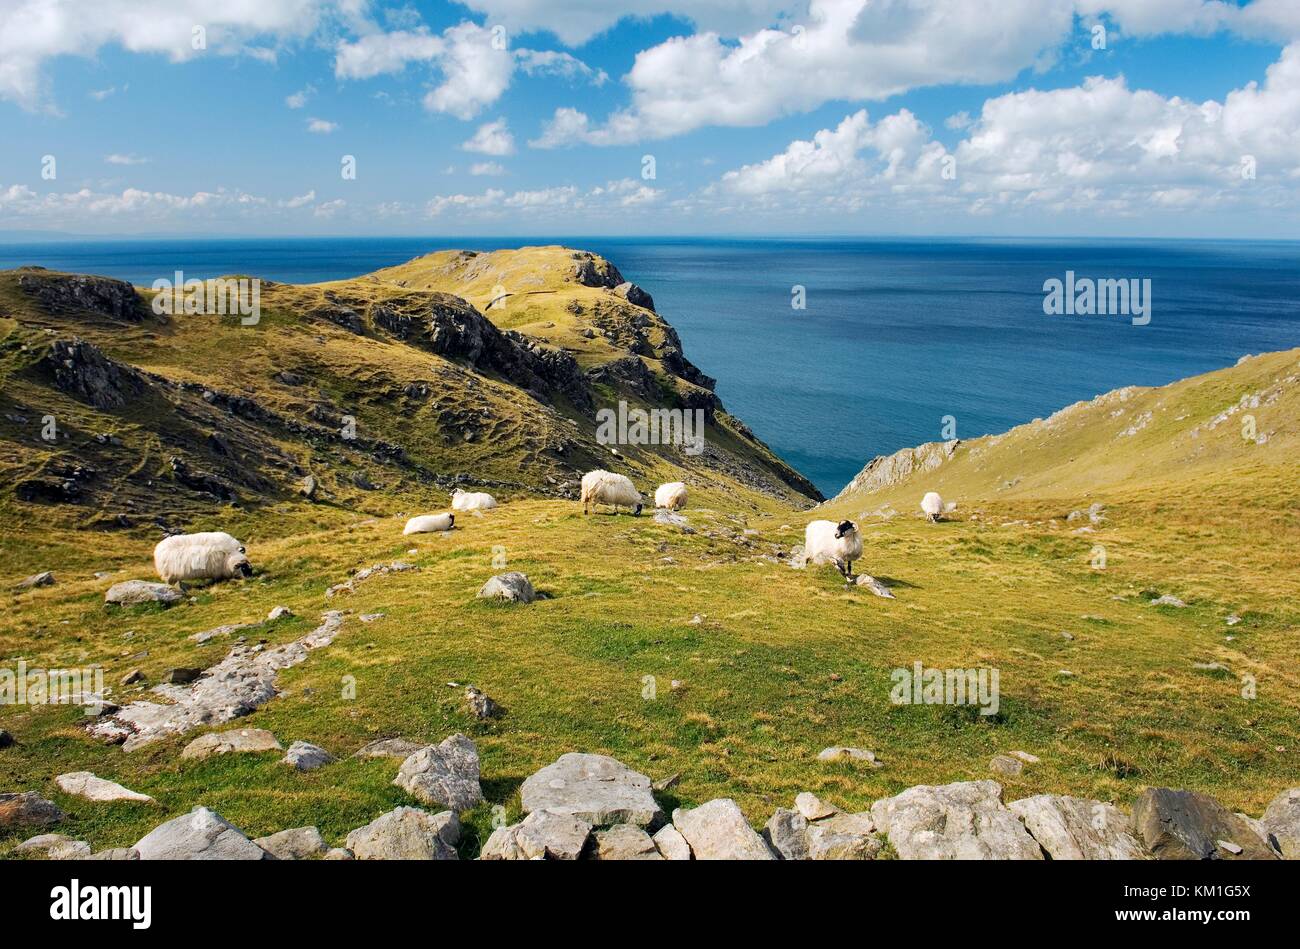 Schafe grasen, hoch über dem Atlantik in den Slieve League Cliffs im Westen von killybegs im Südwesten Donegal. Irland. Stockfoto